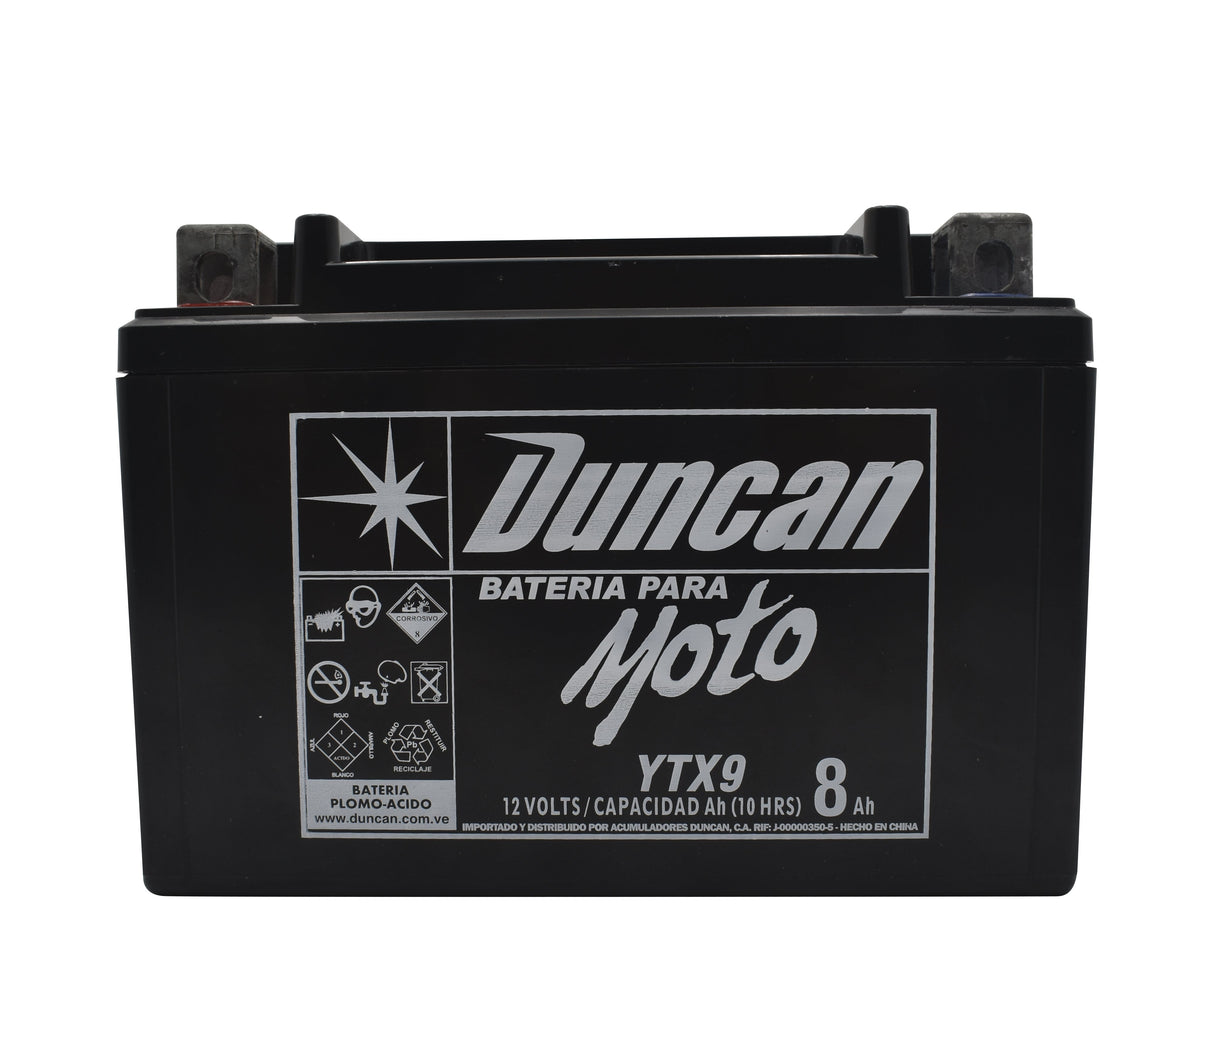 Batería para moto YTX9 Duncan